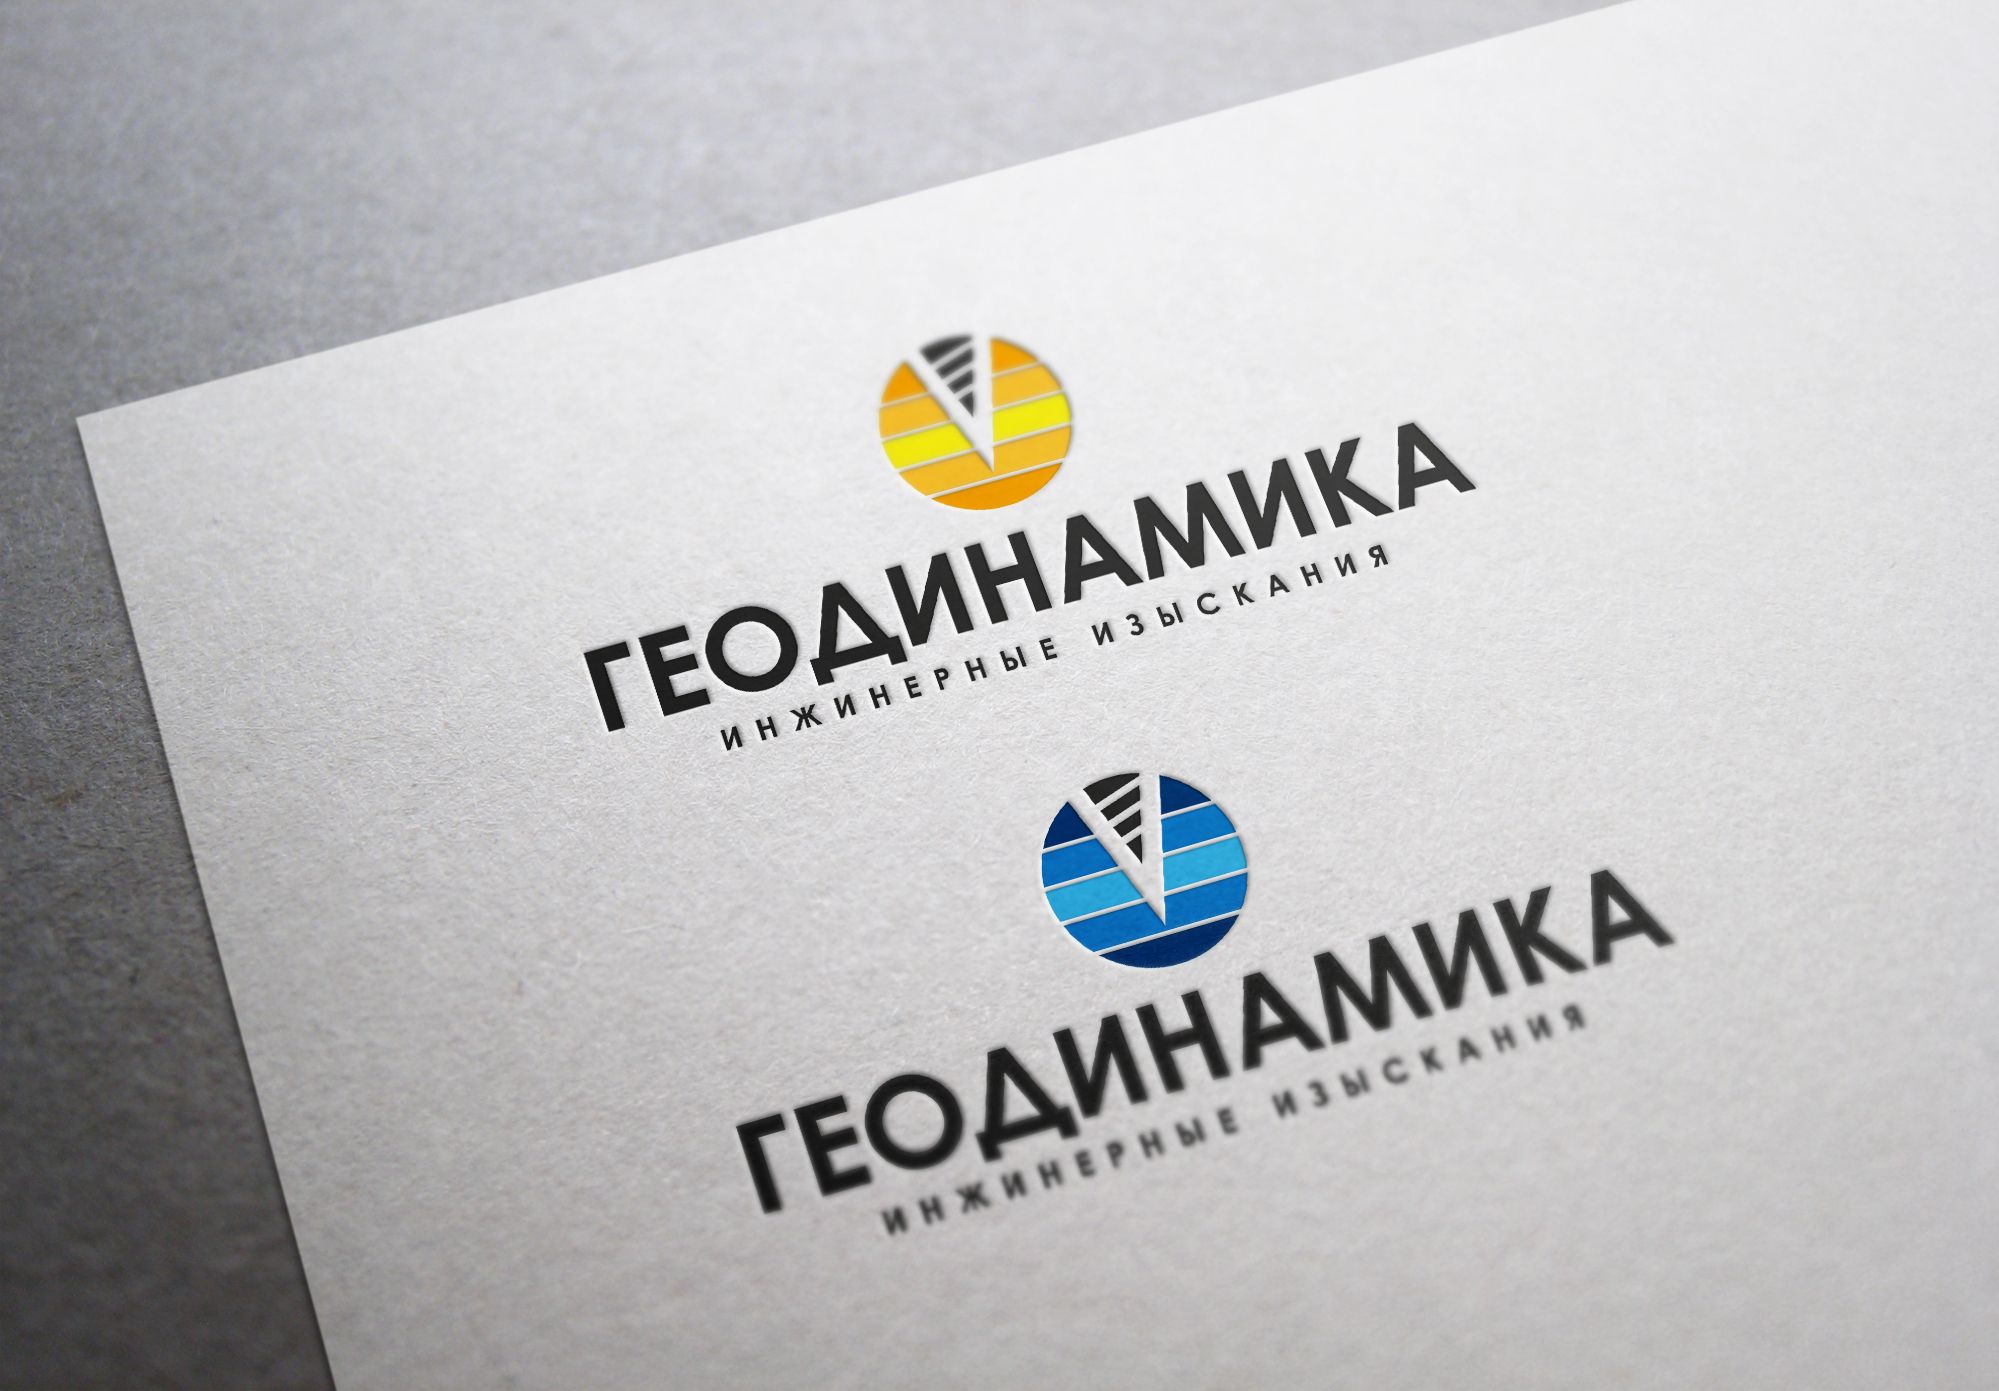 Логотип для изыскательской компании - дизайнер U4po4mak